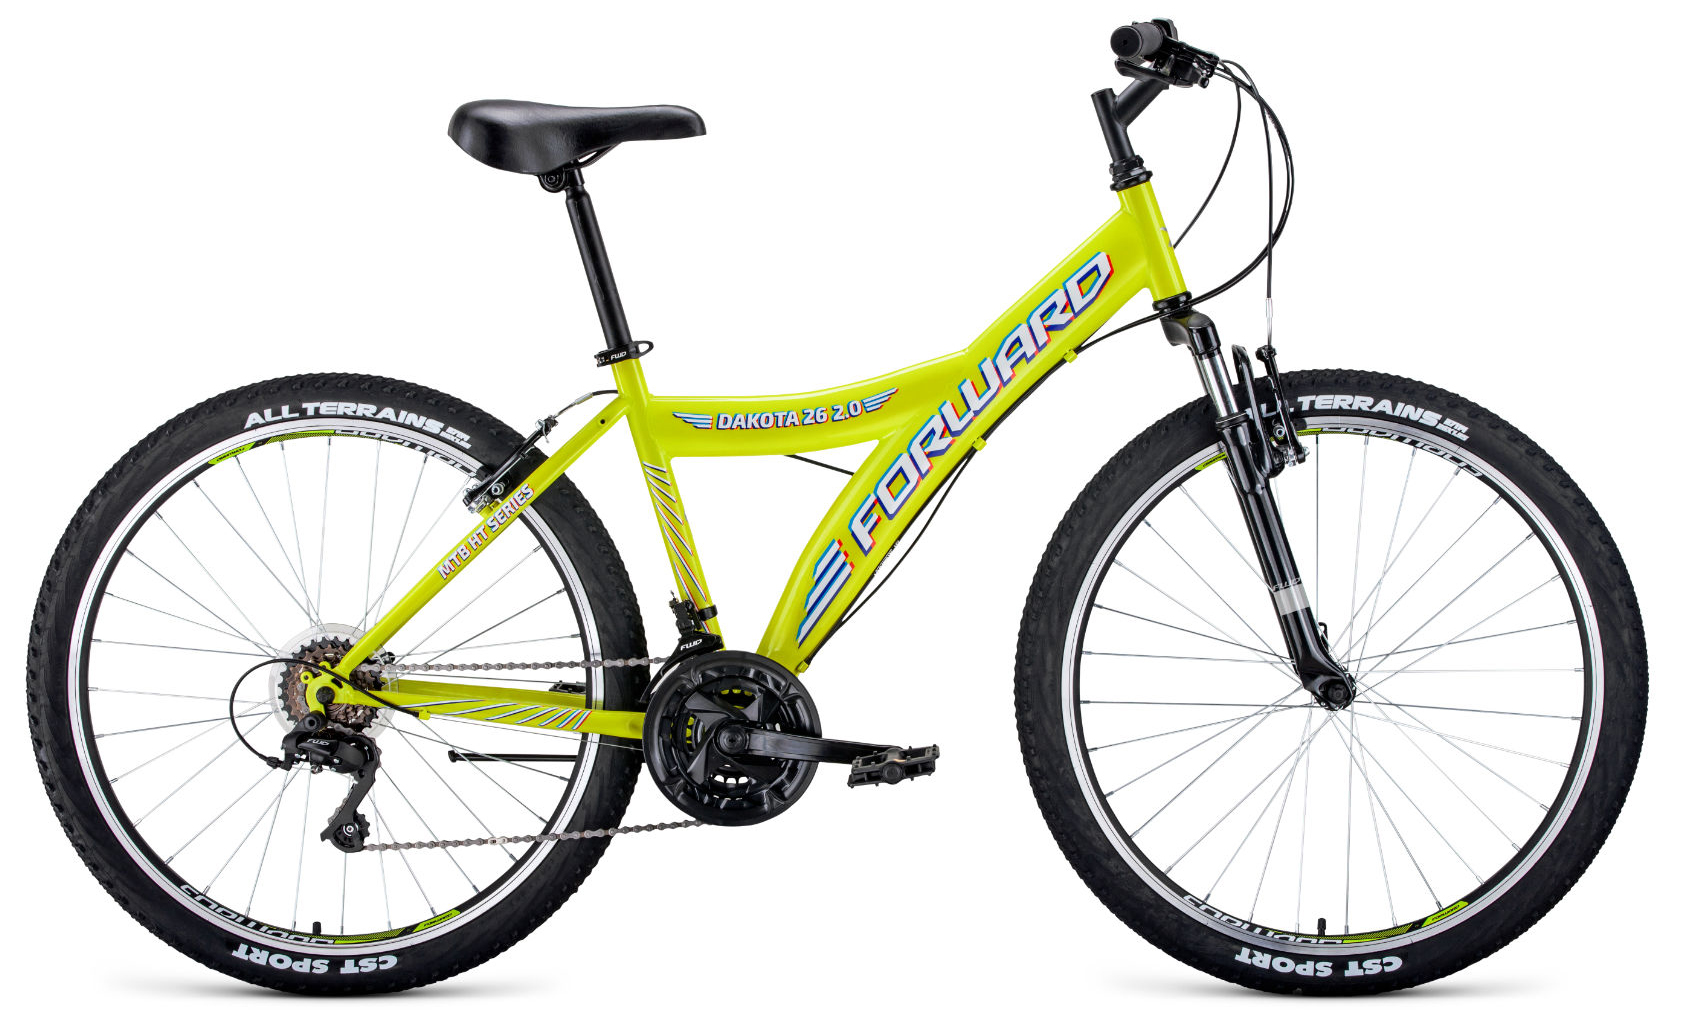  Отзывы о Горном велосипеде Forward Dakota 26 2.0 2020